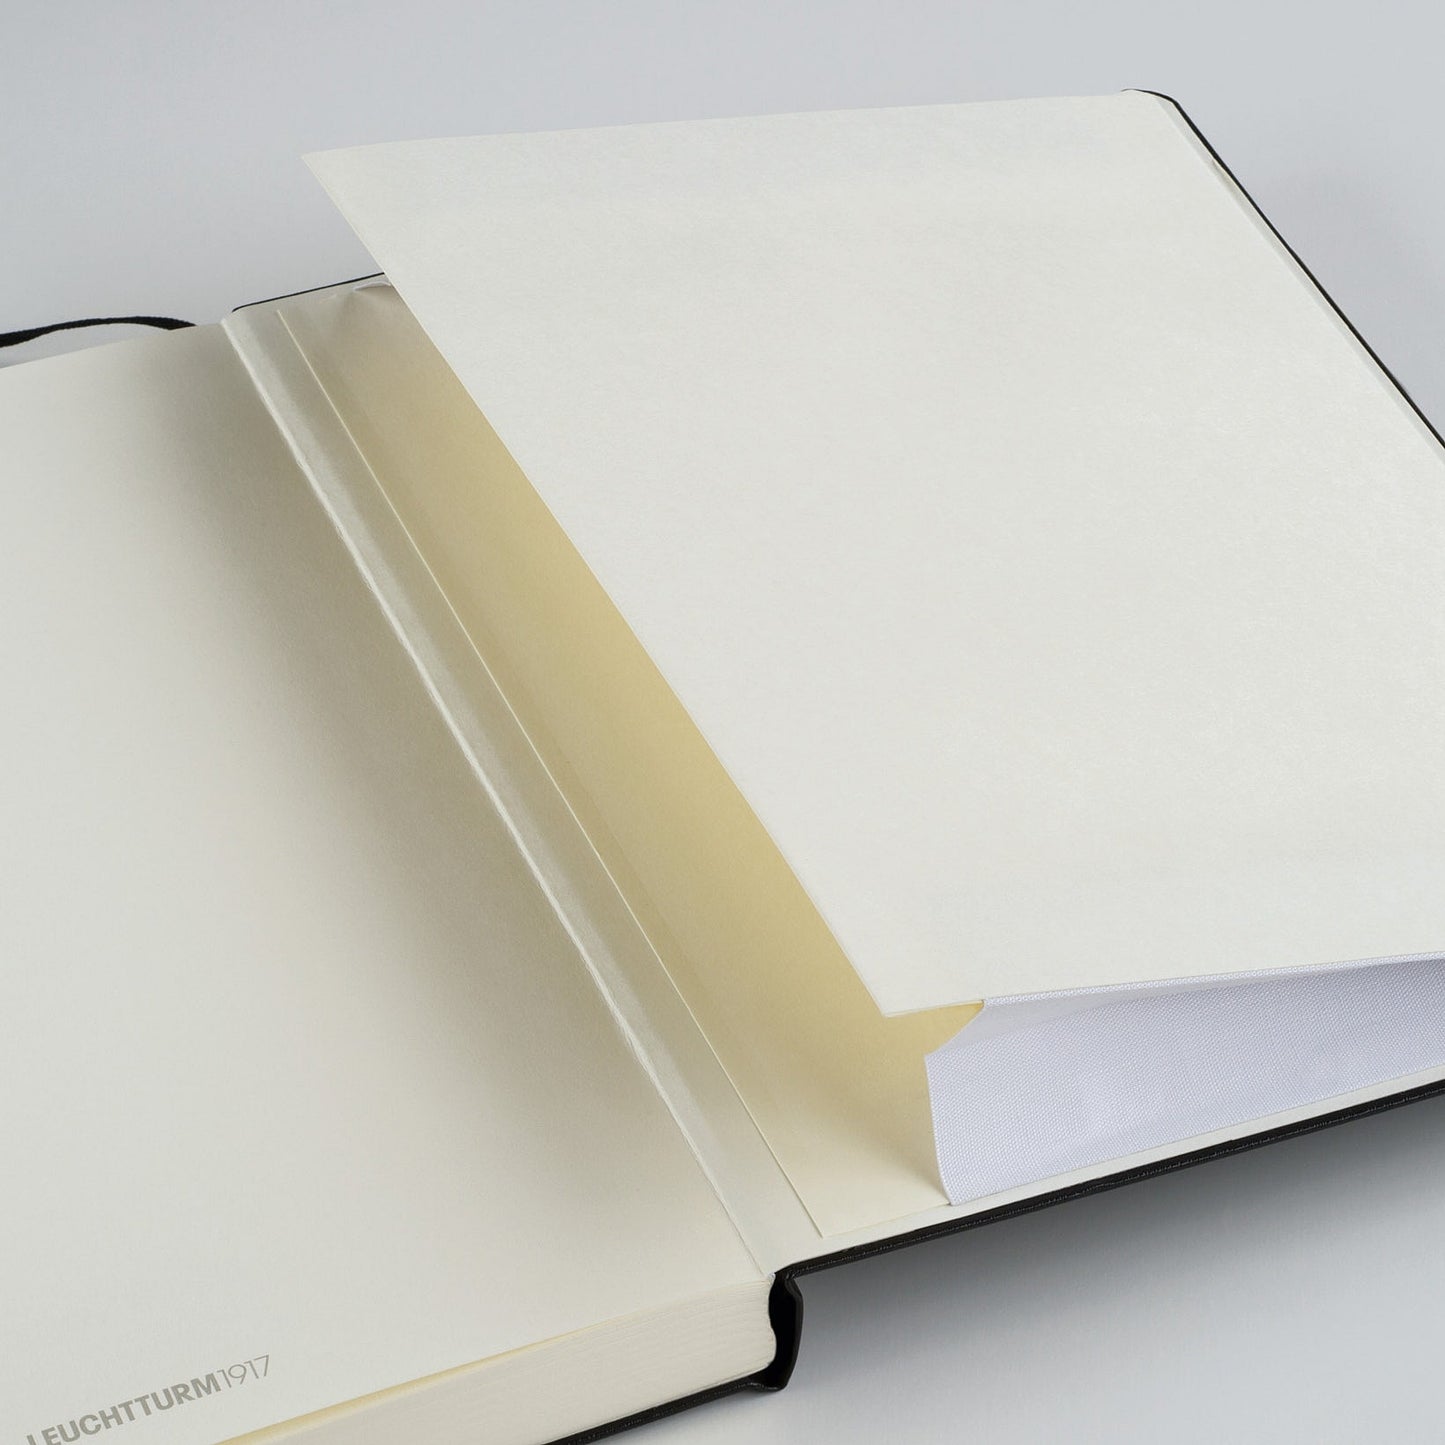 Leuchtturm1917 A5 Medium Hardcover Notebook - Stone Blue / Dotted